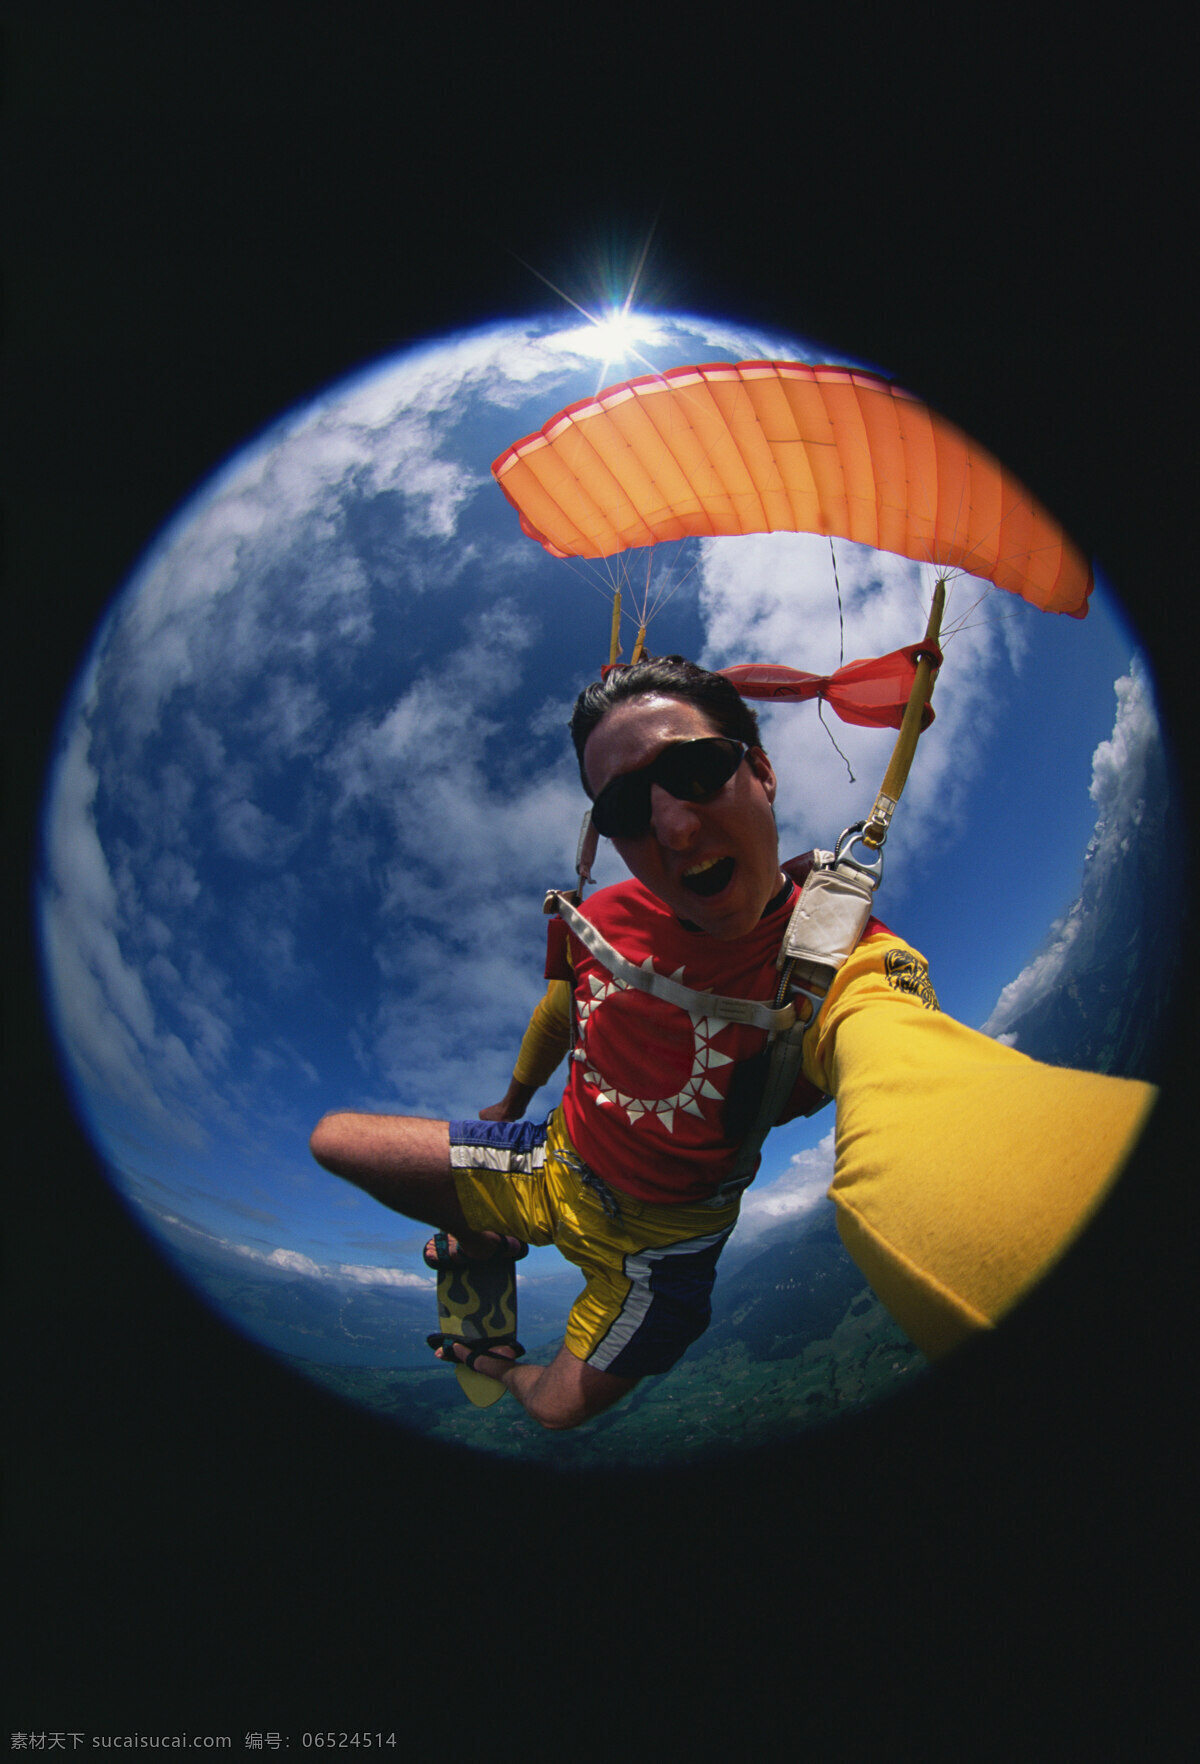 高空滑翔 高空 滑翔 滑翔伞 文化艺术 体育运动 摄影图库